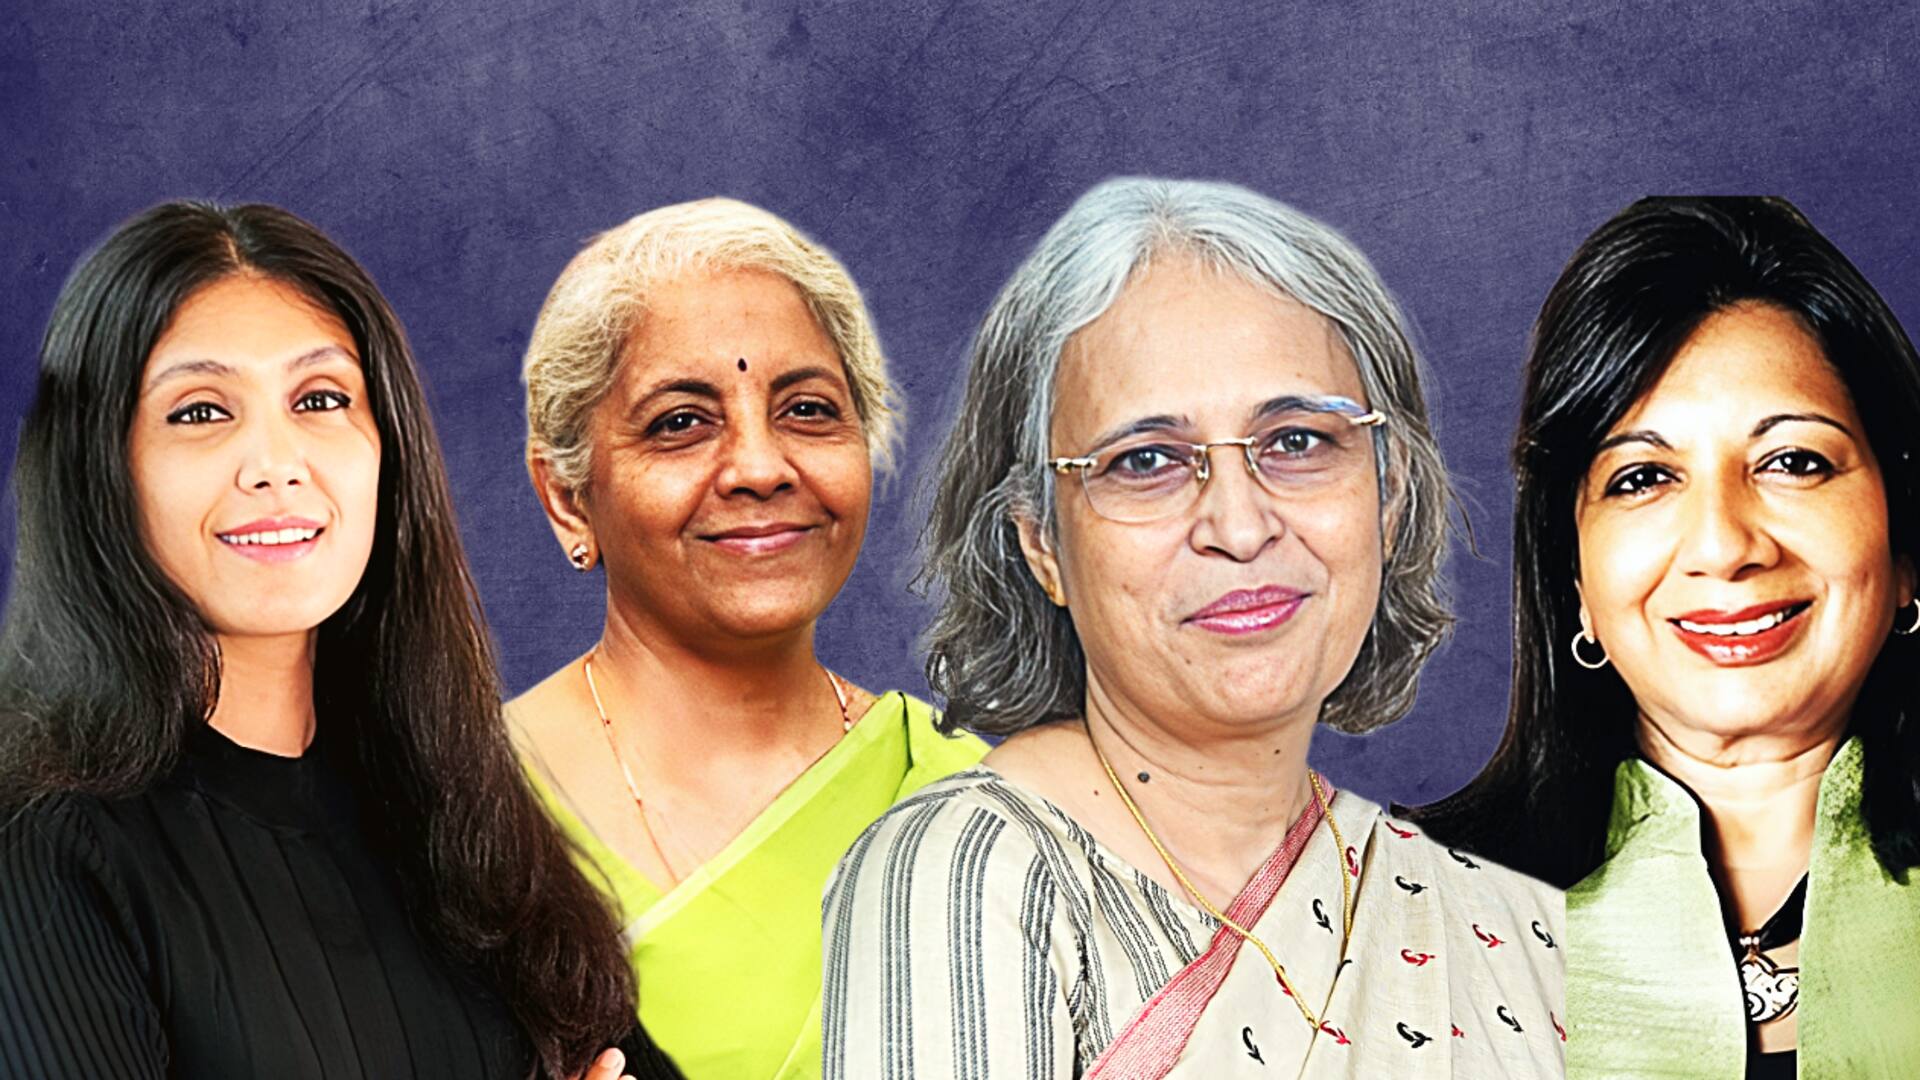 फोर्ब्स की 100 सबसे ताकतवर महिलाओं की सूची में 4 भारतीय महिलाएं शामिल, जानिए नाम